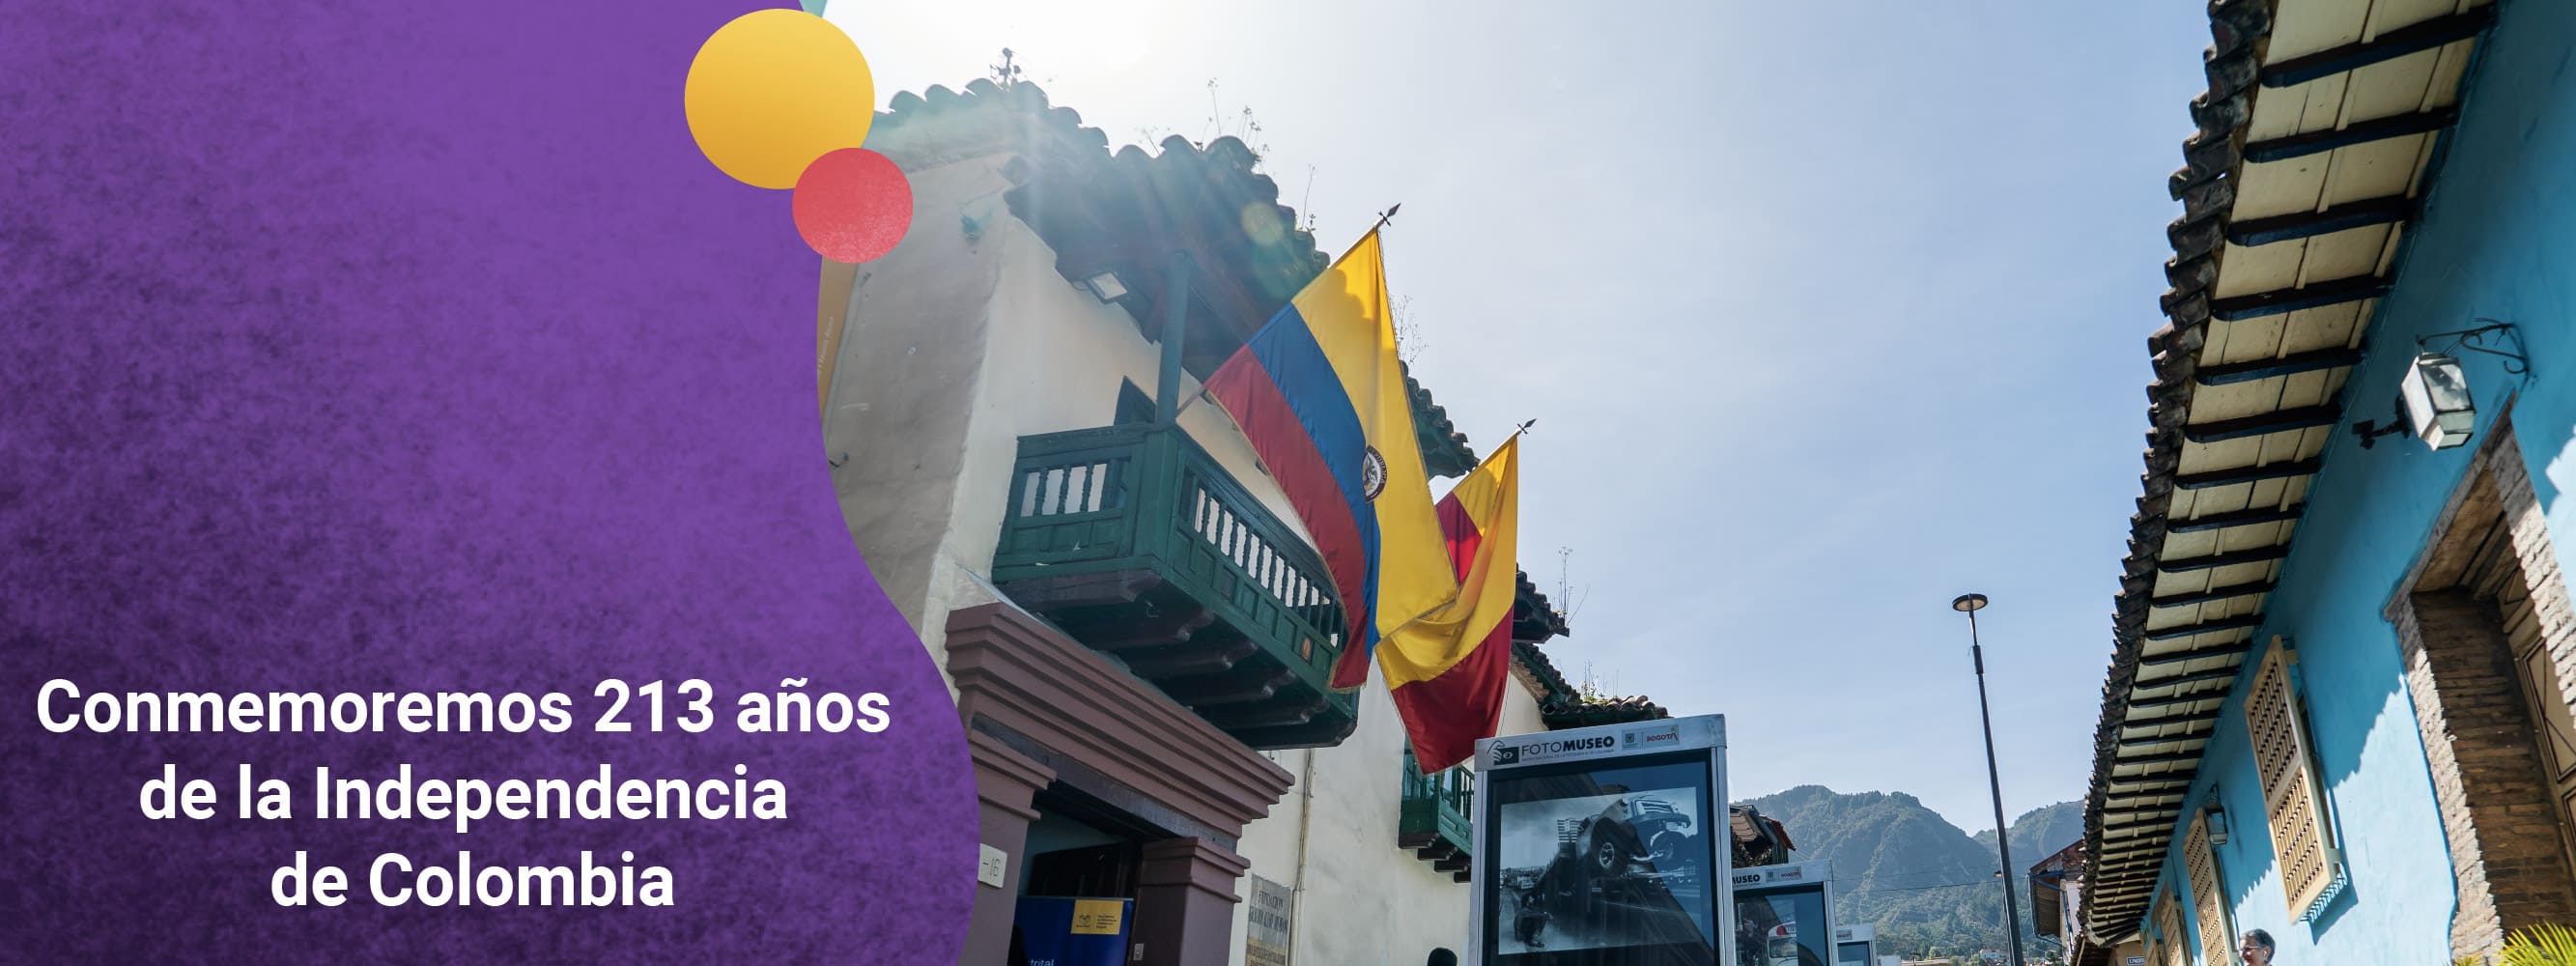 Conmemoremos 213 años de la Independencia de Colombia